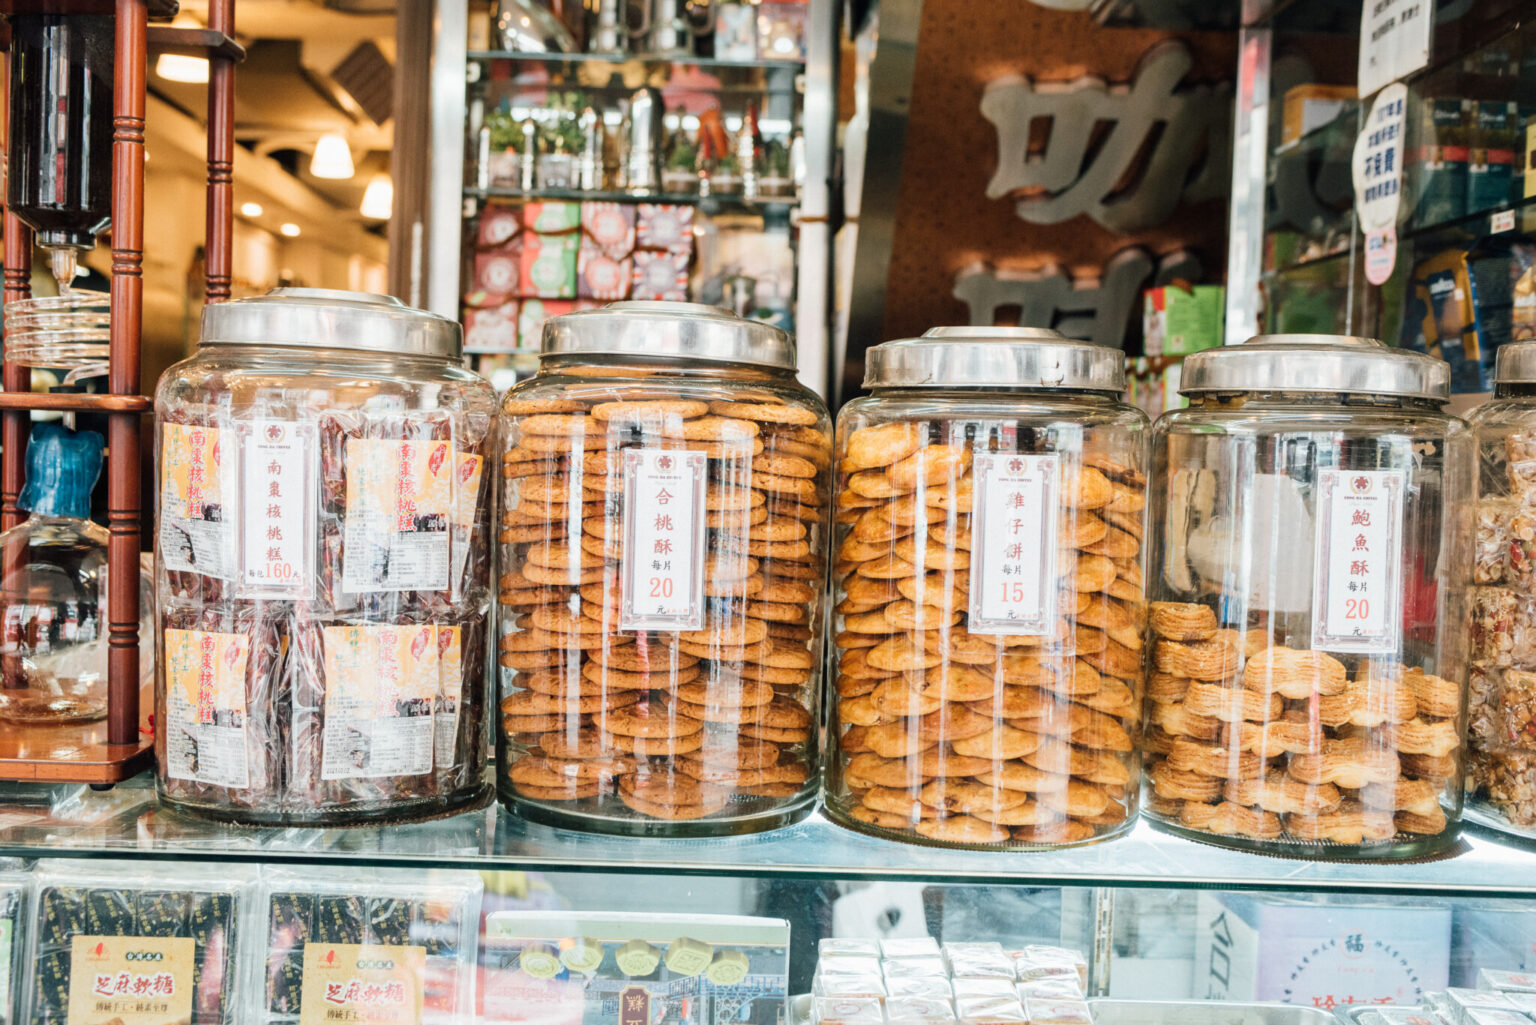 ガラスポットに入っているのが評判の香港クッキー。台北人の人気のおやつでもある。店頭で販売されている。